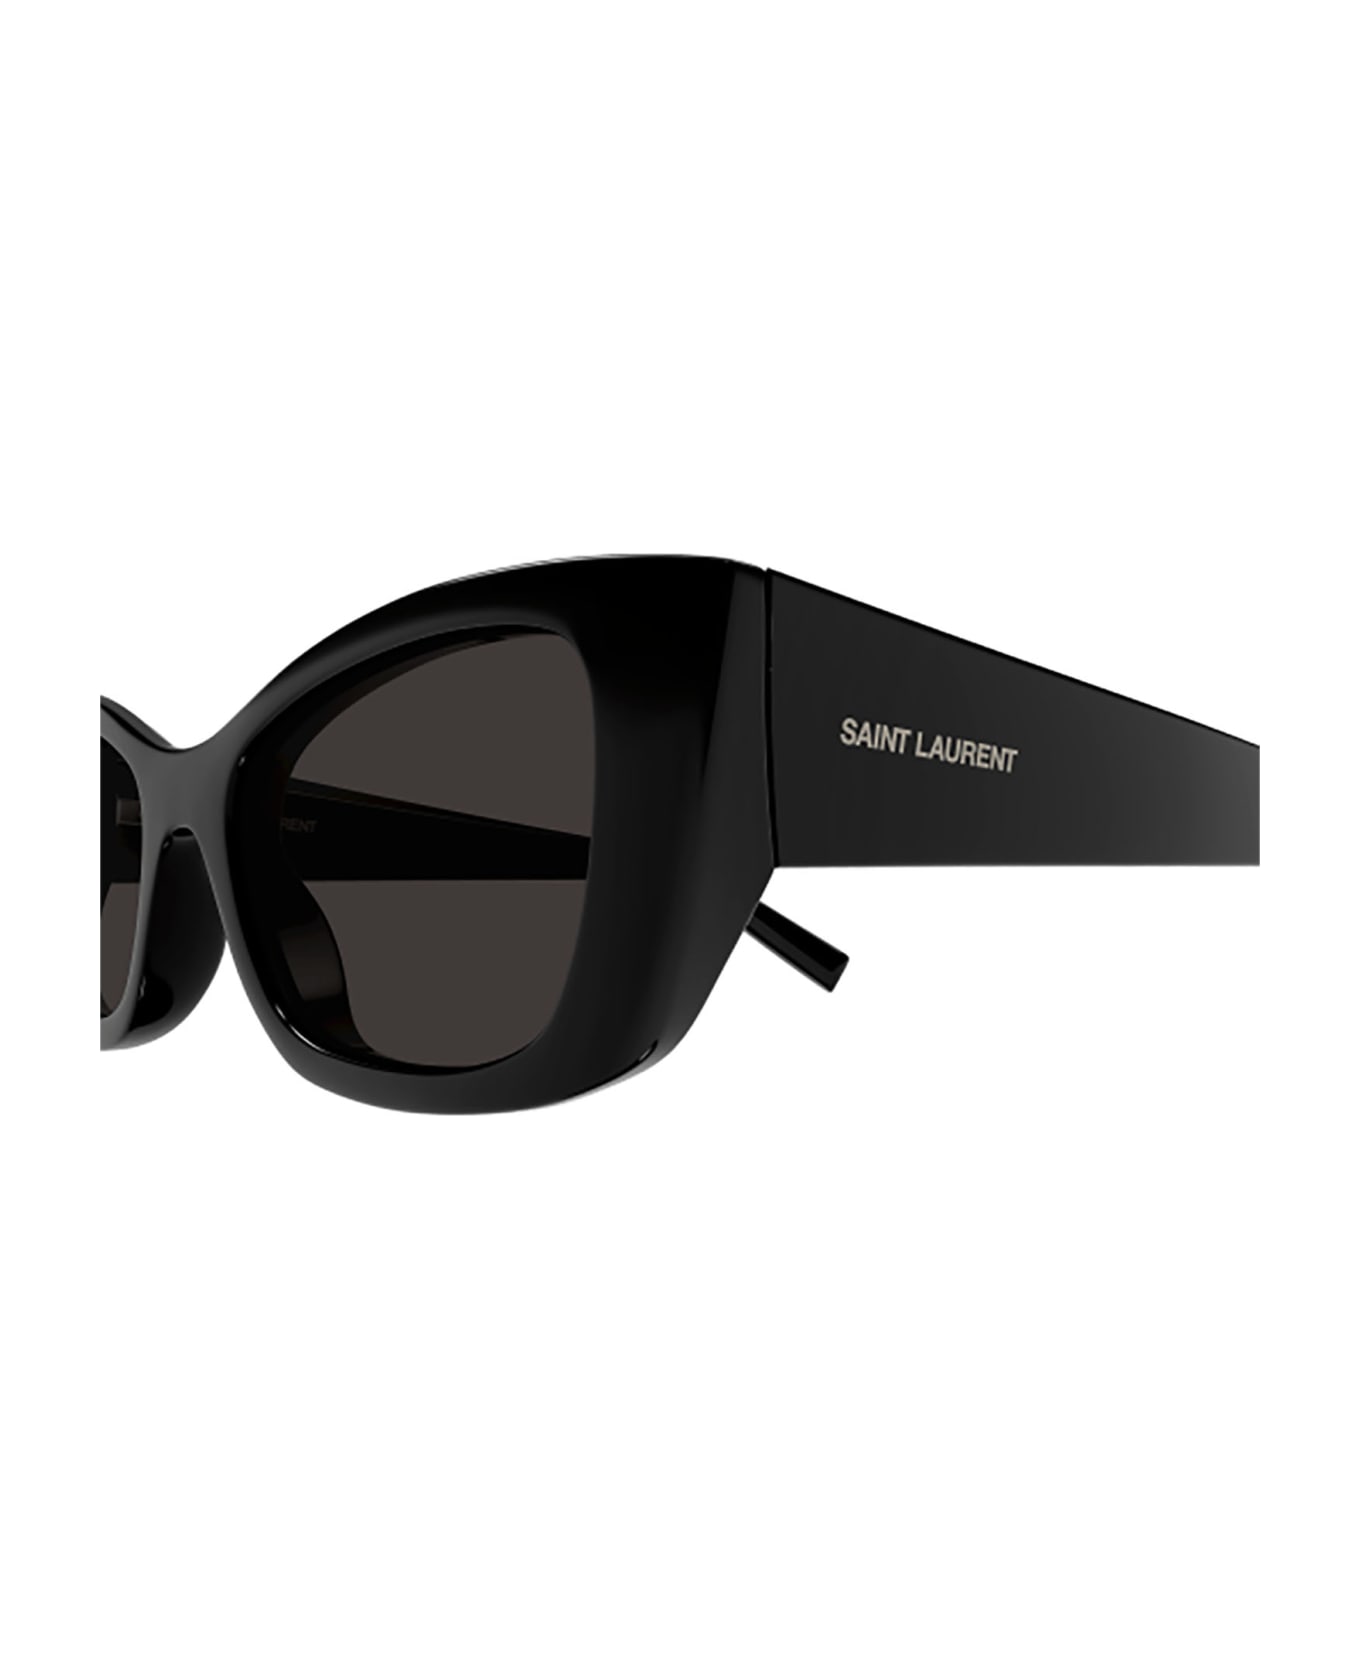 Saint Laurent Eyewear Sl 593 Sunglasses - 001 black black black